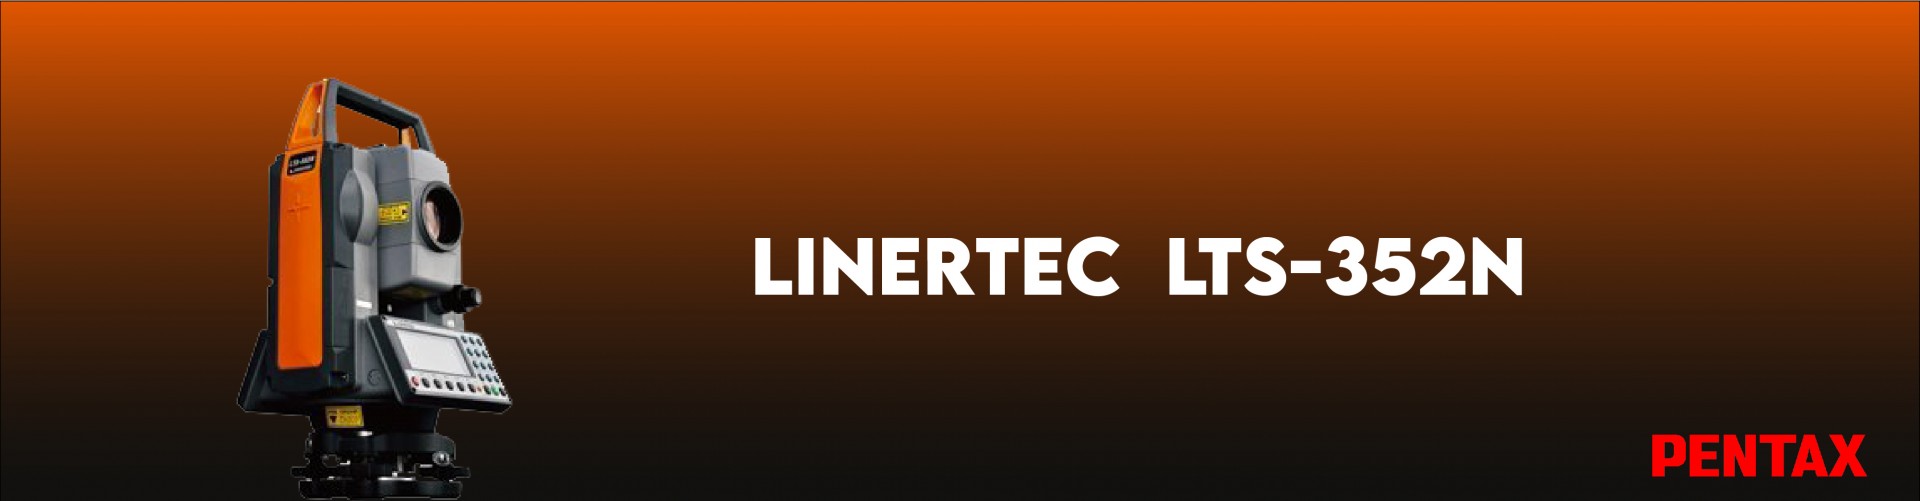 LINERTEC LTS-352N